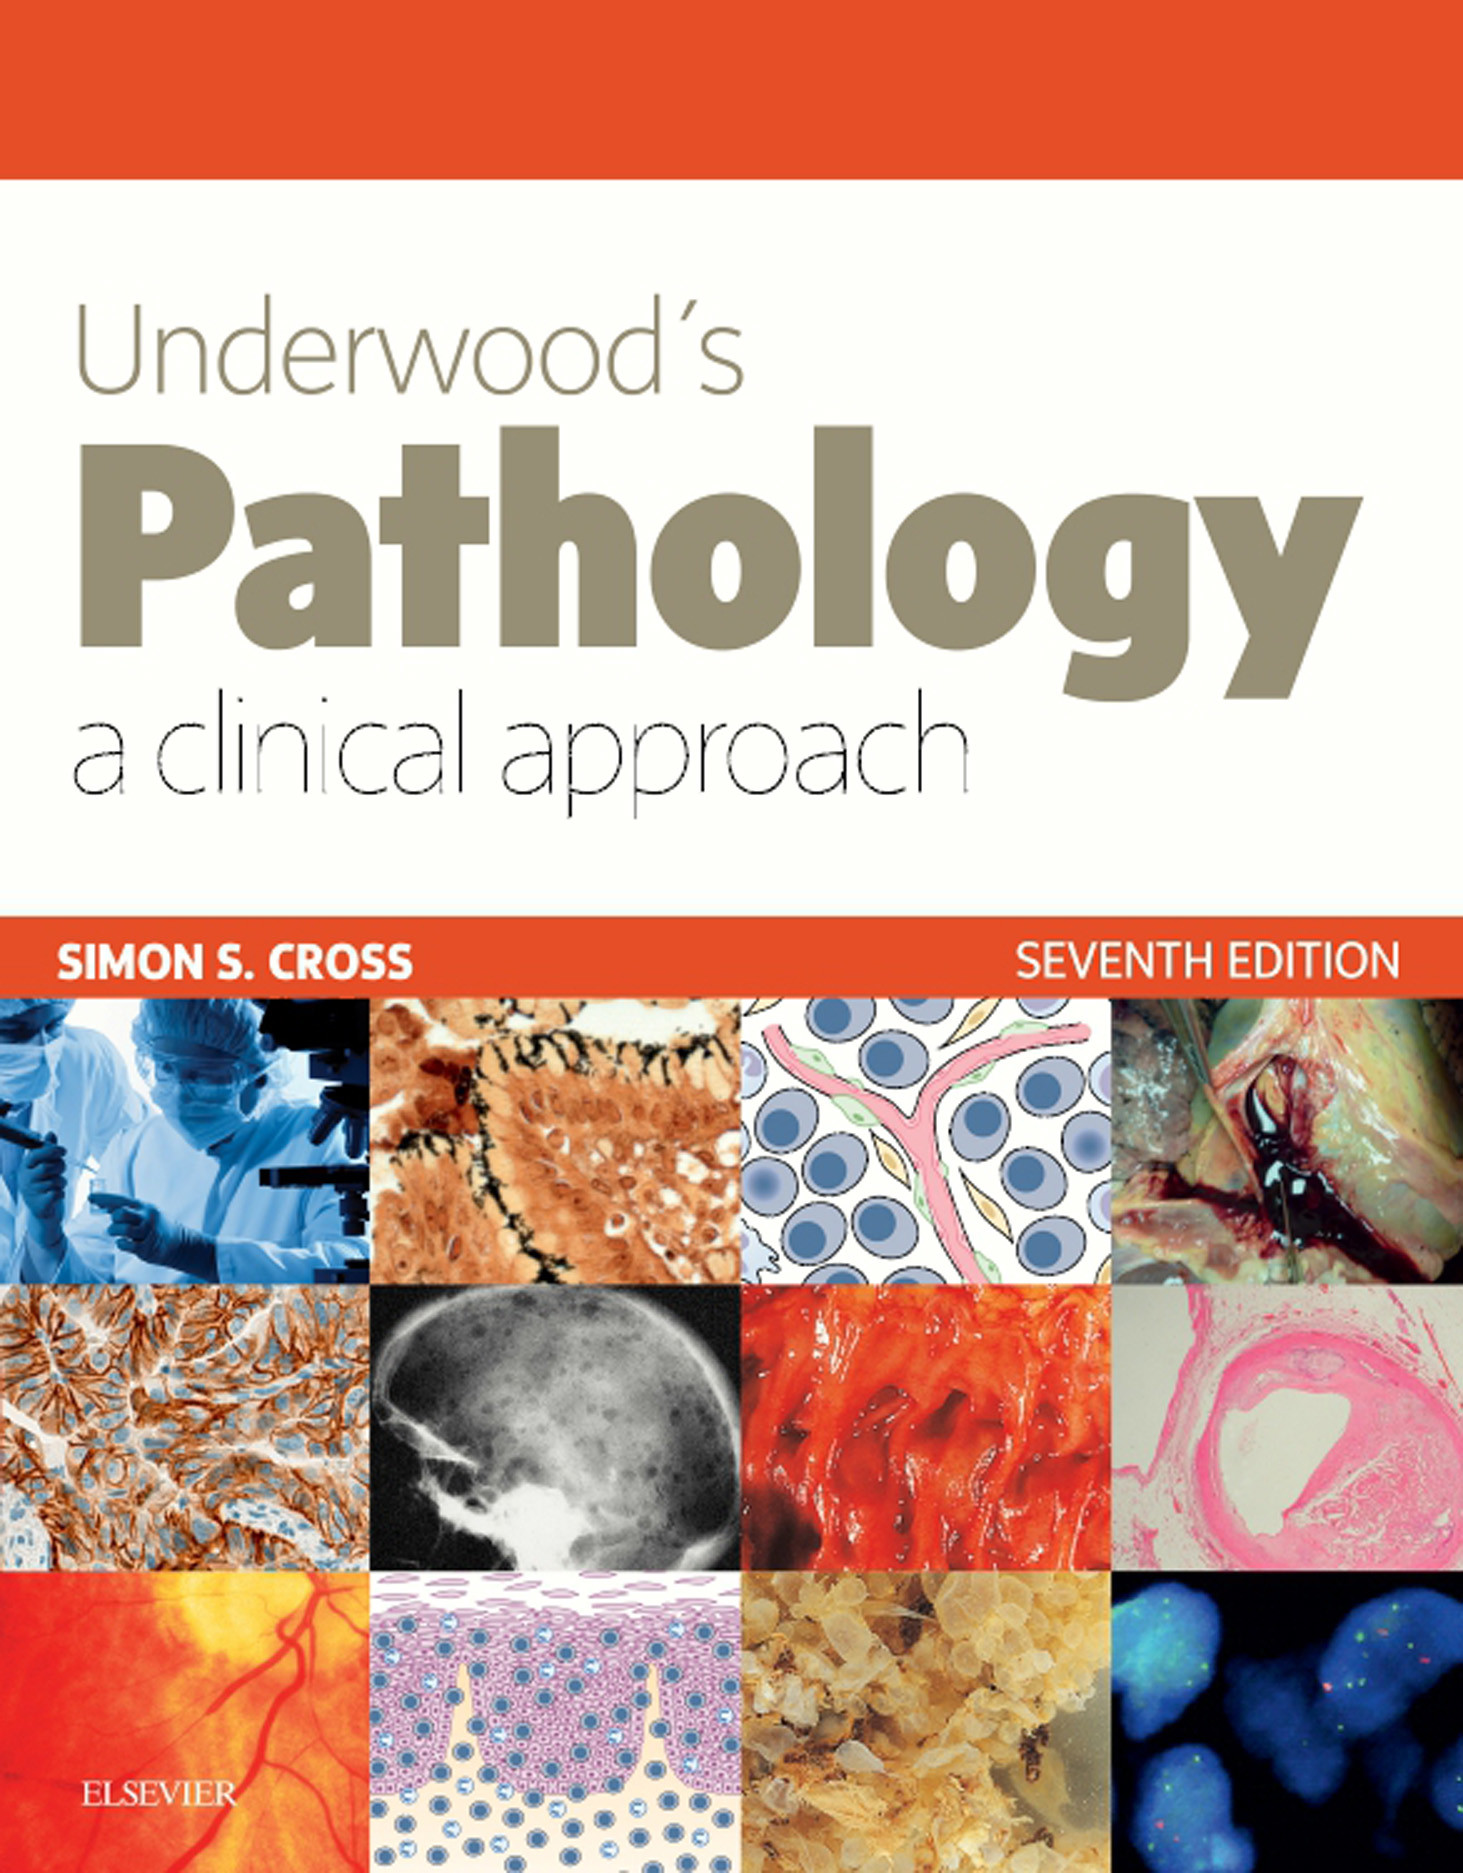 Underwood's Pathology